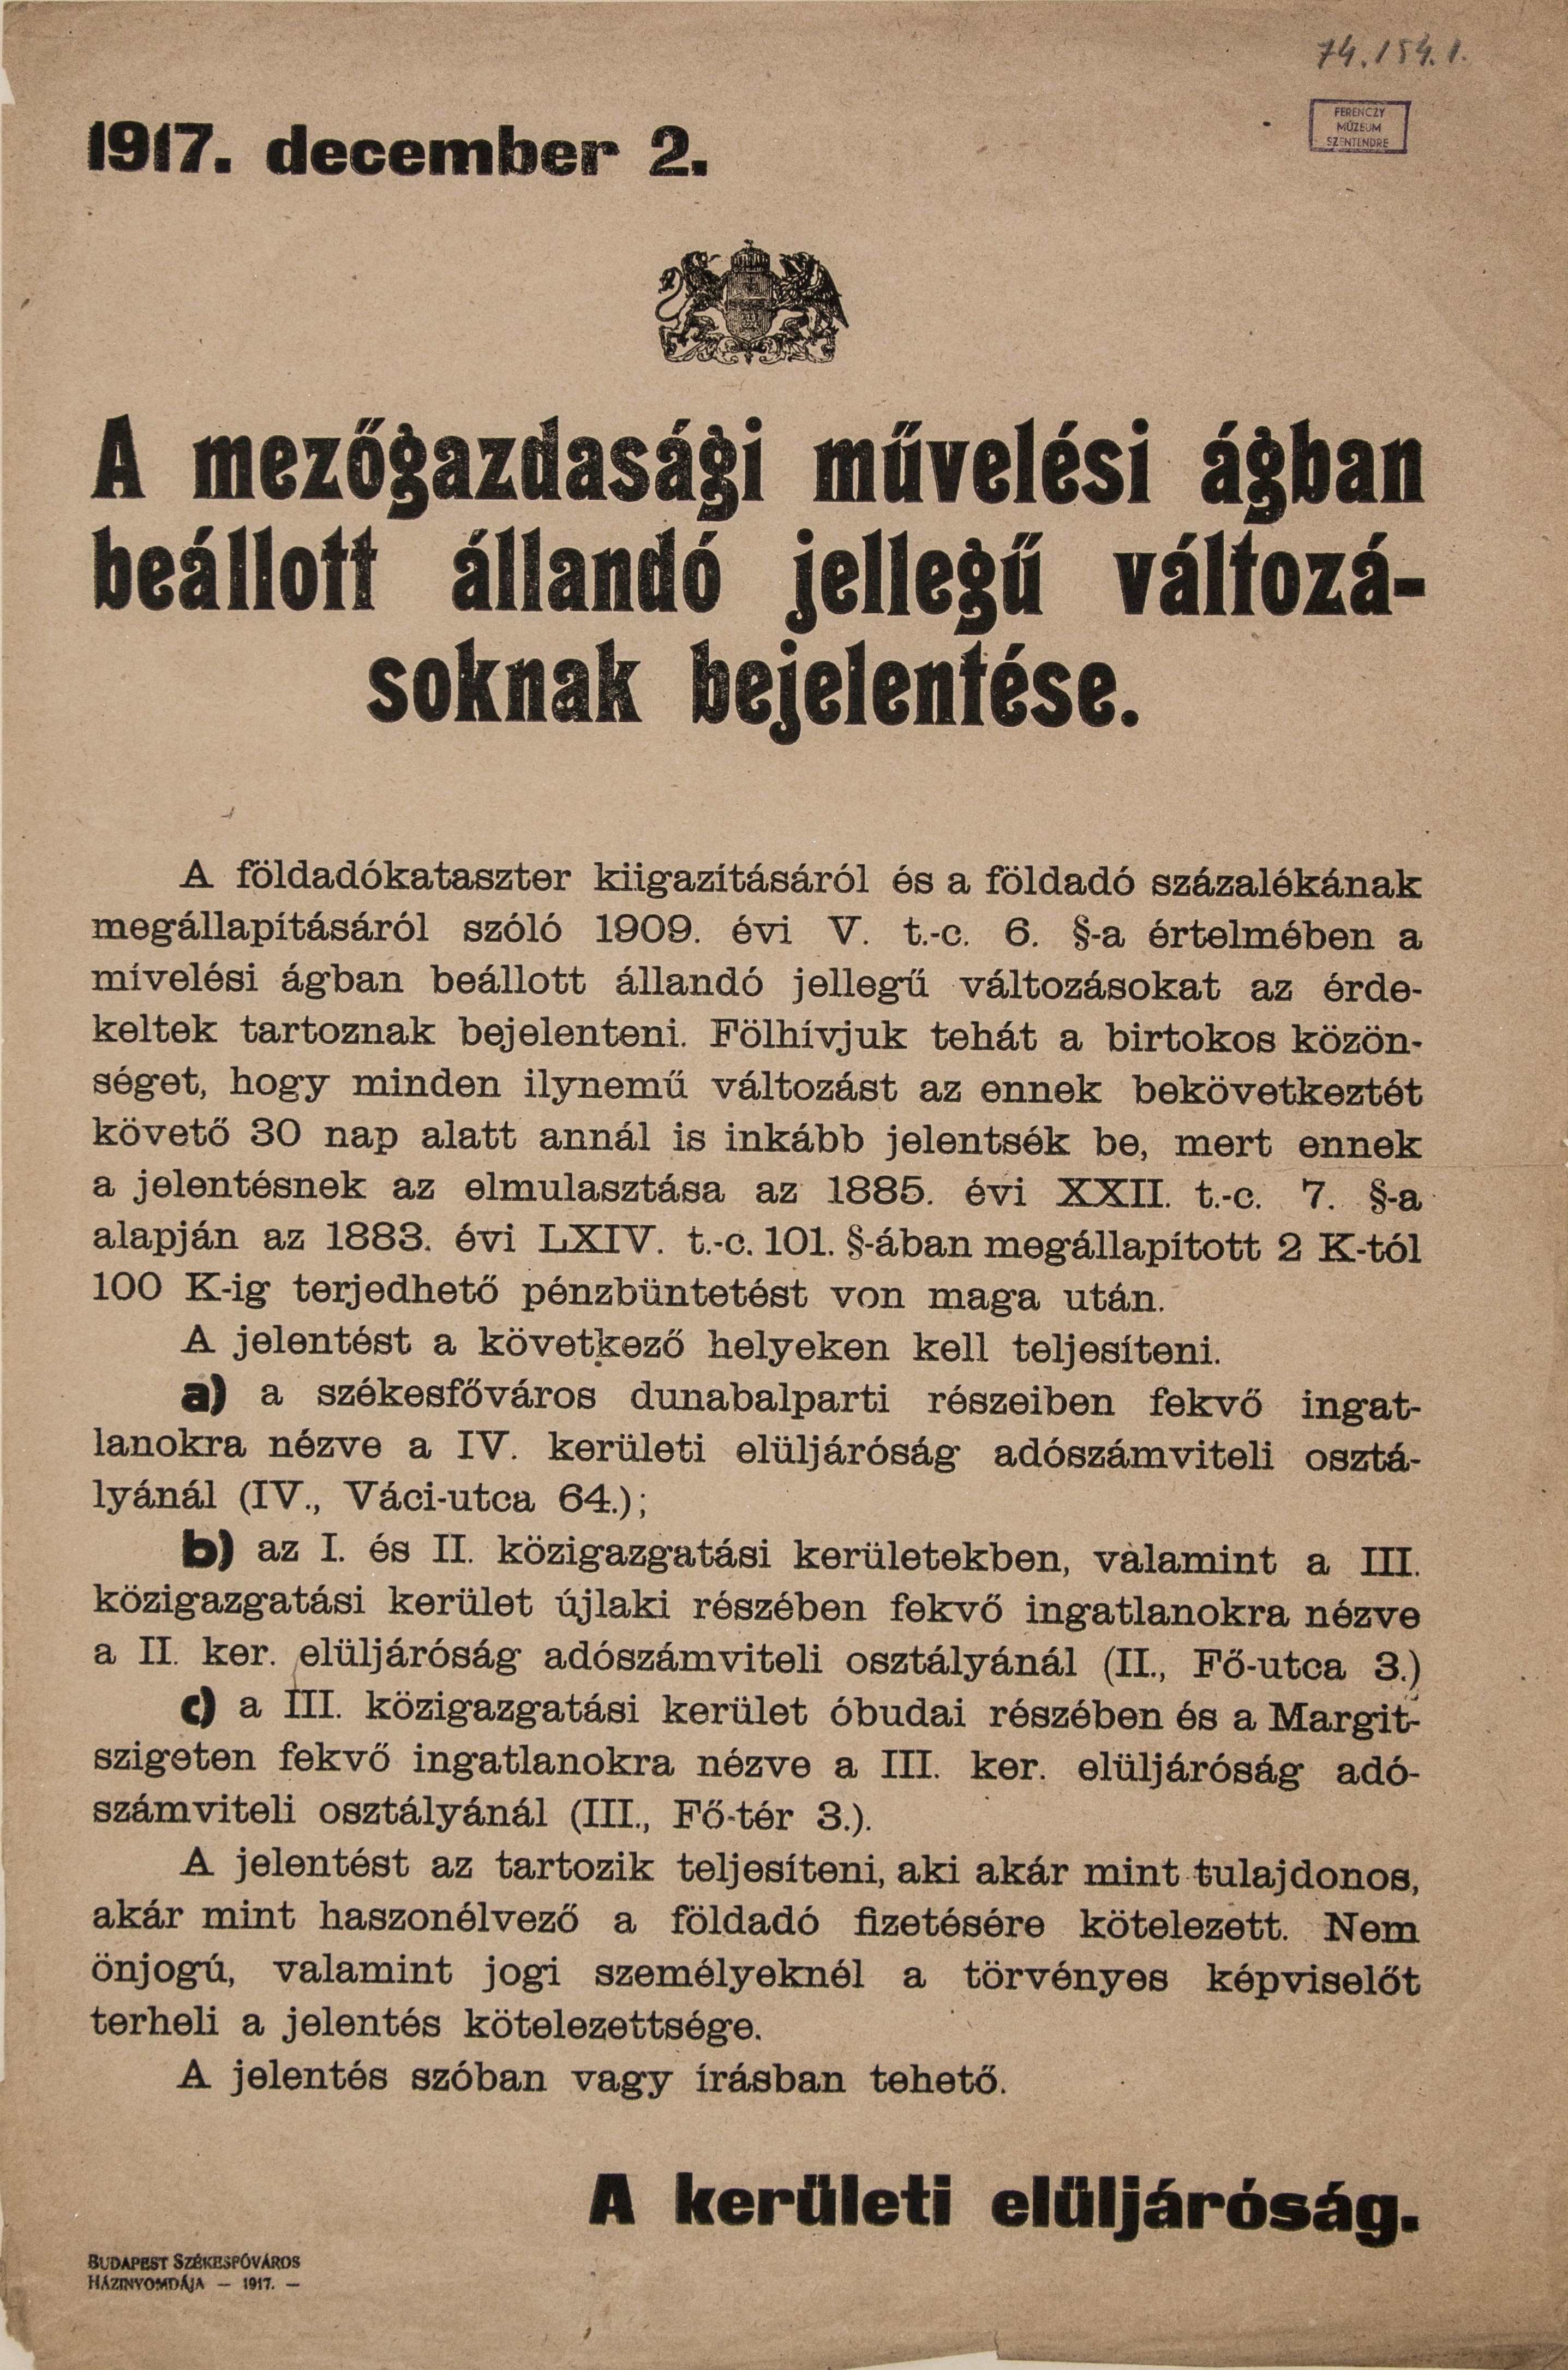 A mezőgazdaságban beállt változások bejelentése, 1917.12.02. (Ferenczy Múzeumi Centrum CC BY-NC-SA)